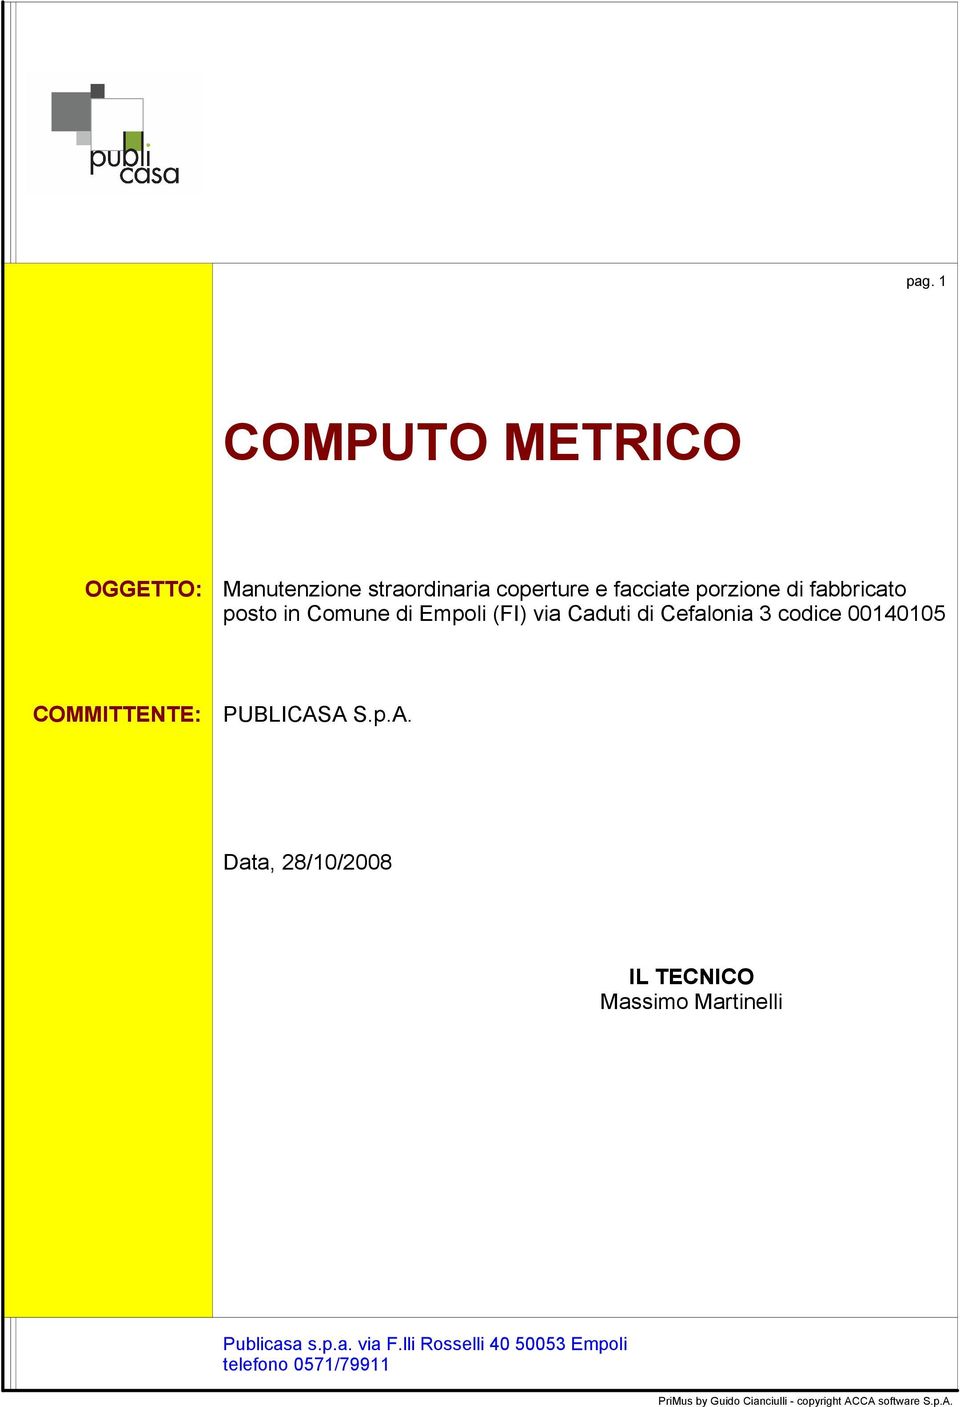 COMMITTENTE: PUBLICASA S.p.A. Data, 28/10/2008 IL TECNICO Massimo Martinelli Publicasa s.p.a. via F.